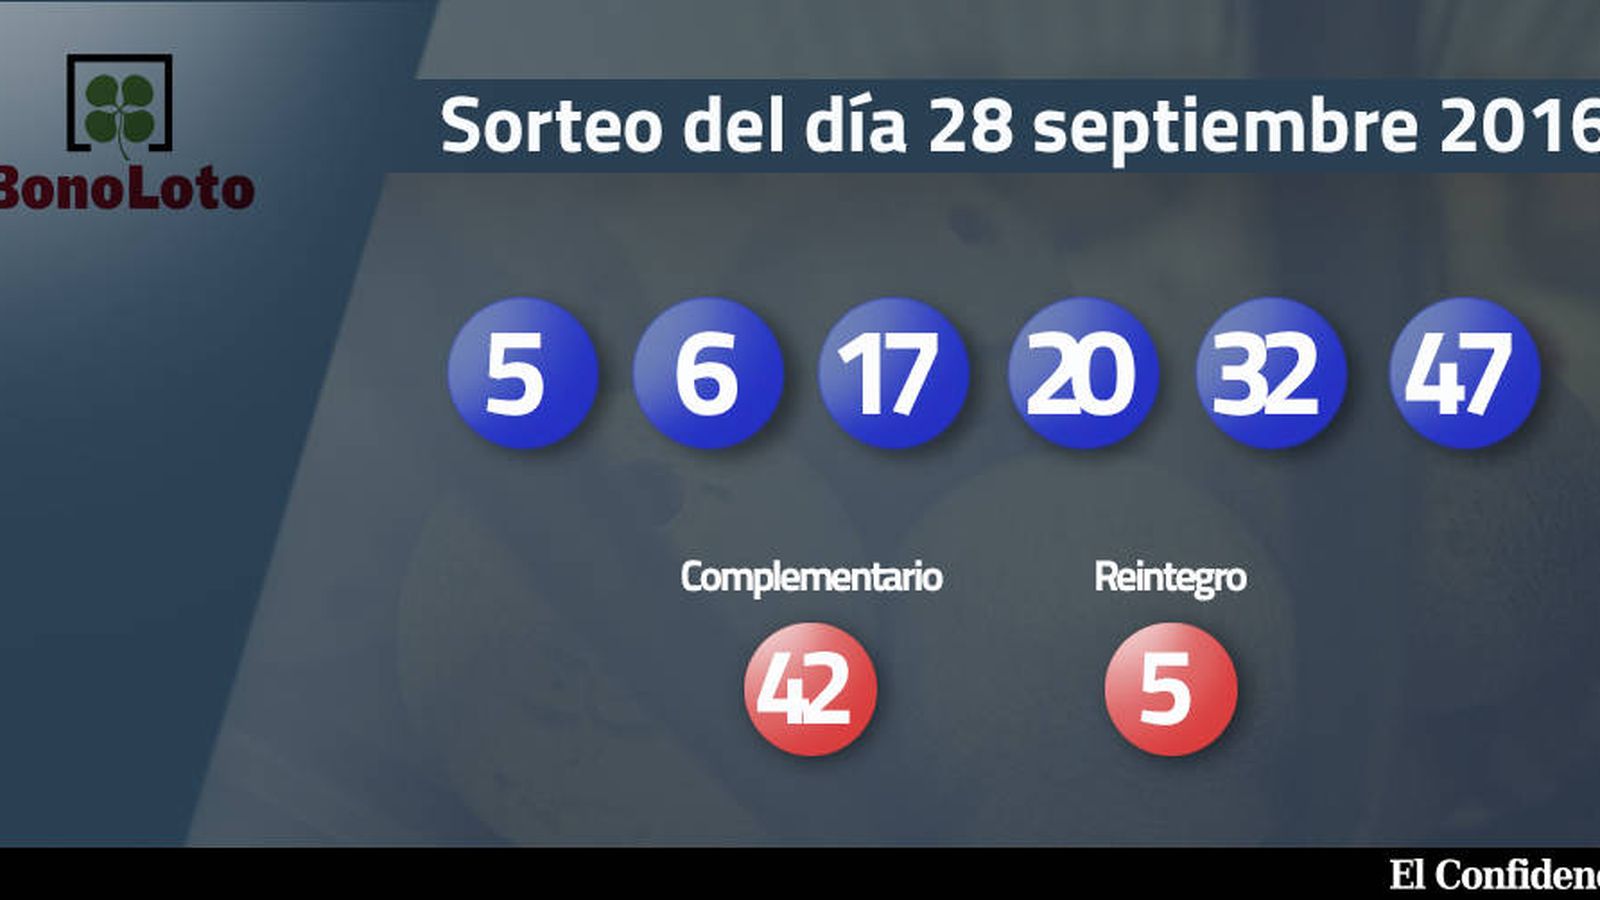 Foto: Resultados del sorteo de la Bonoloto del 28 septiembre 2016 (EC)